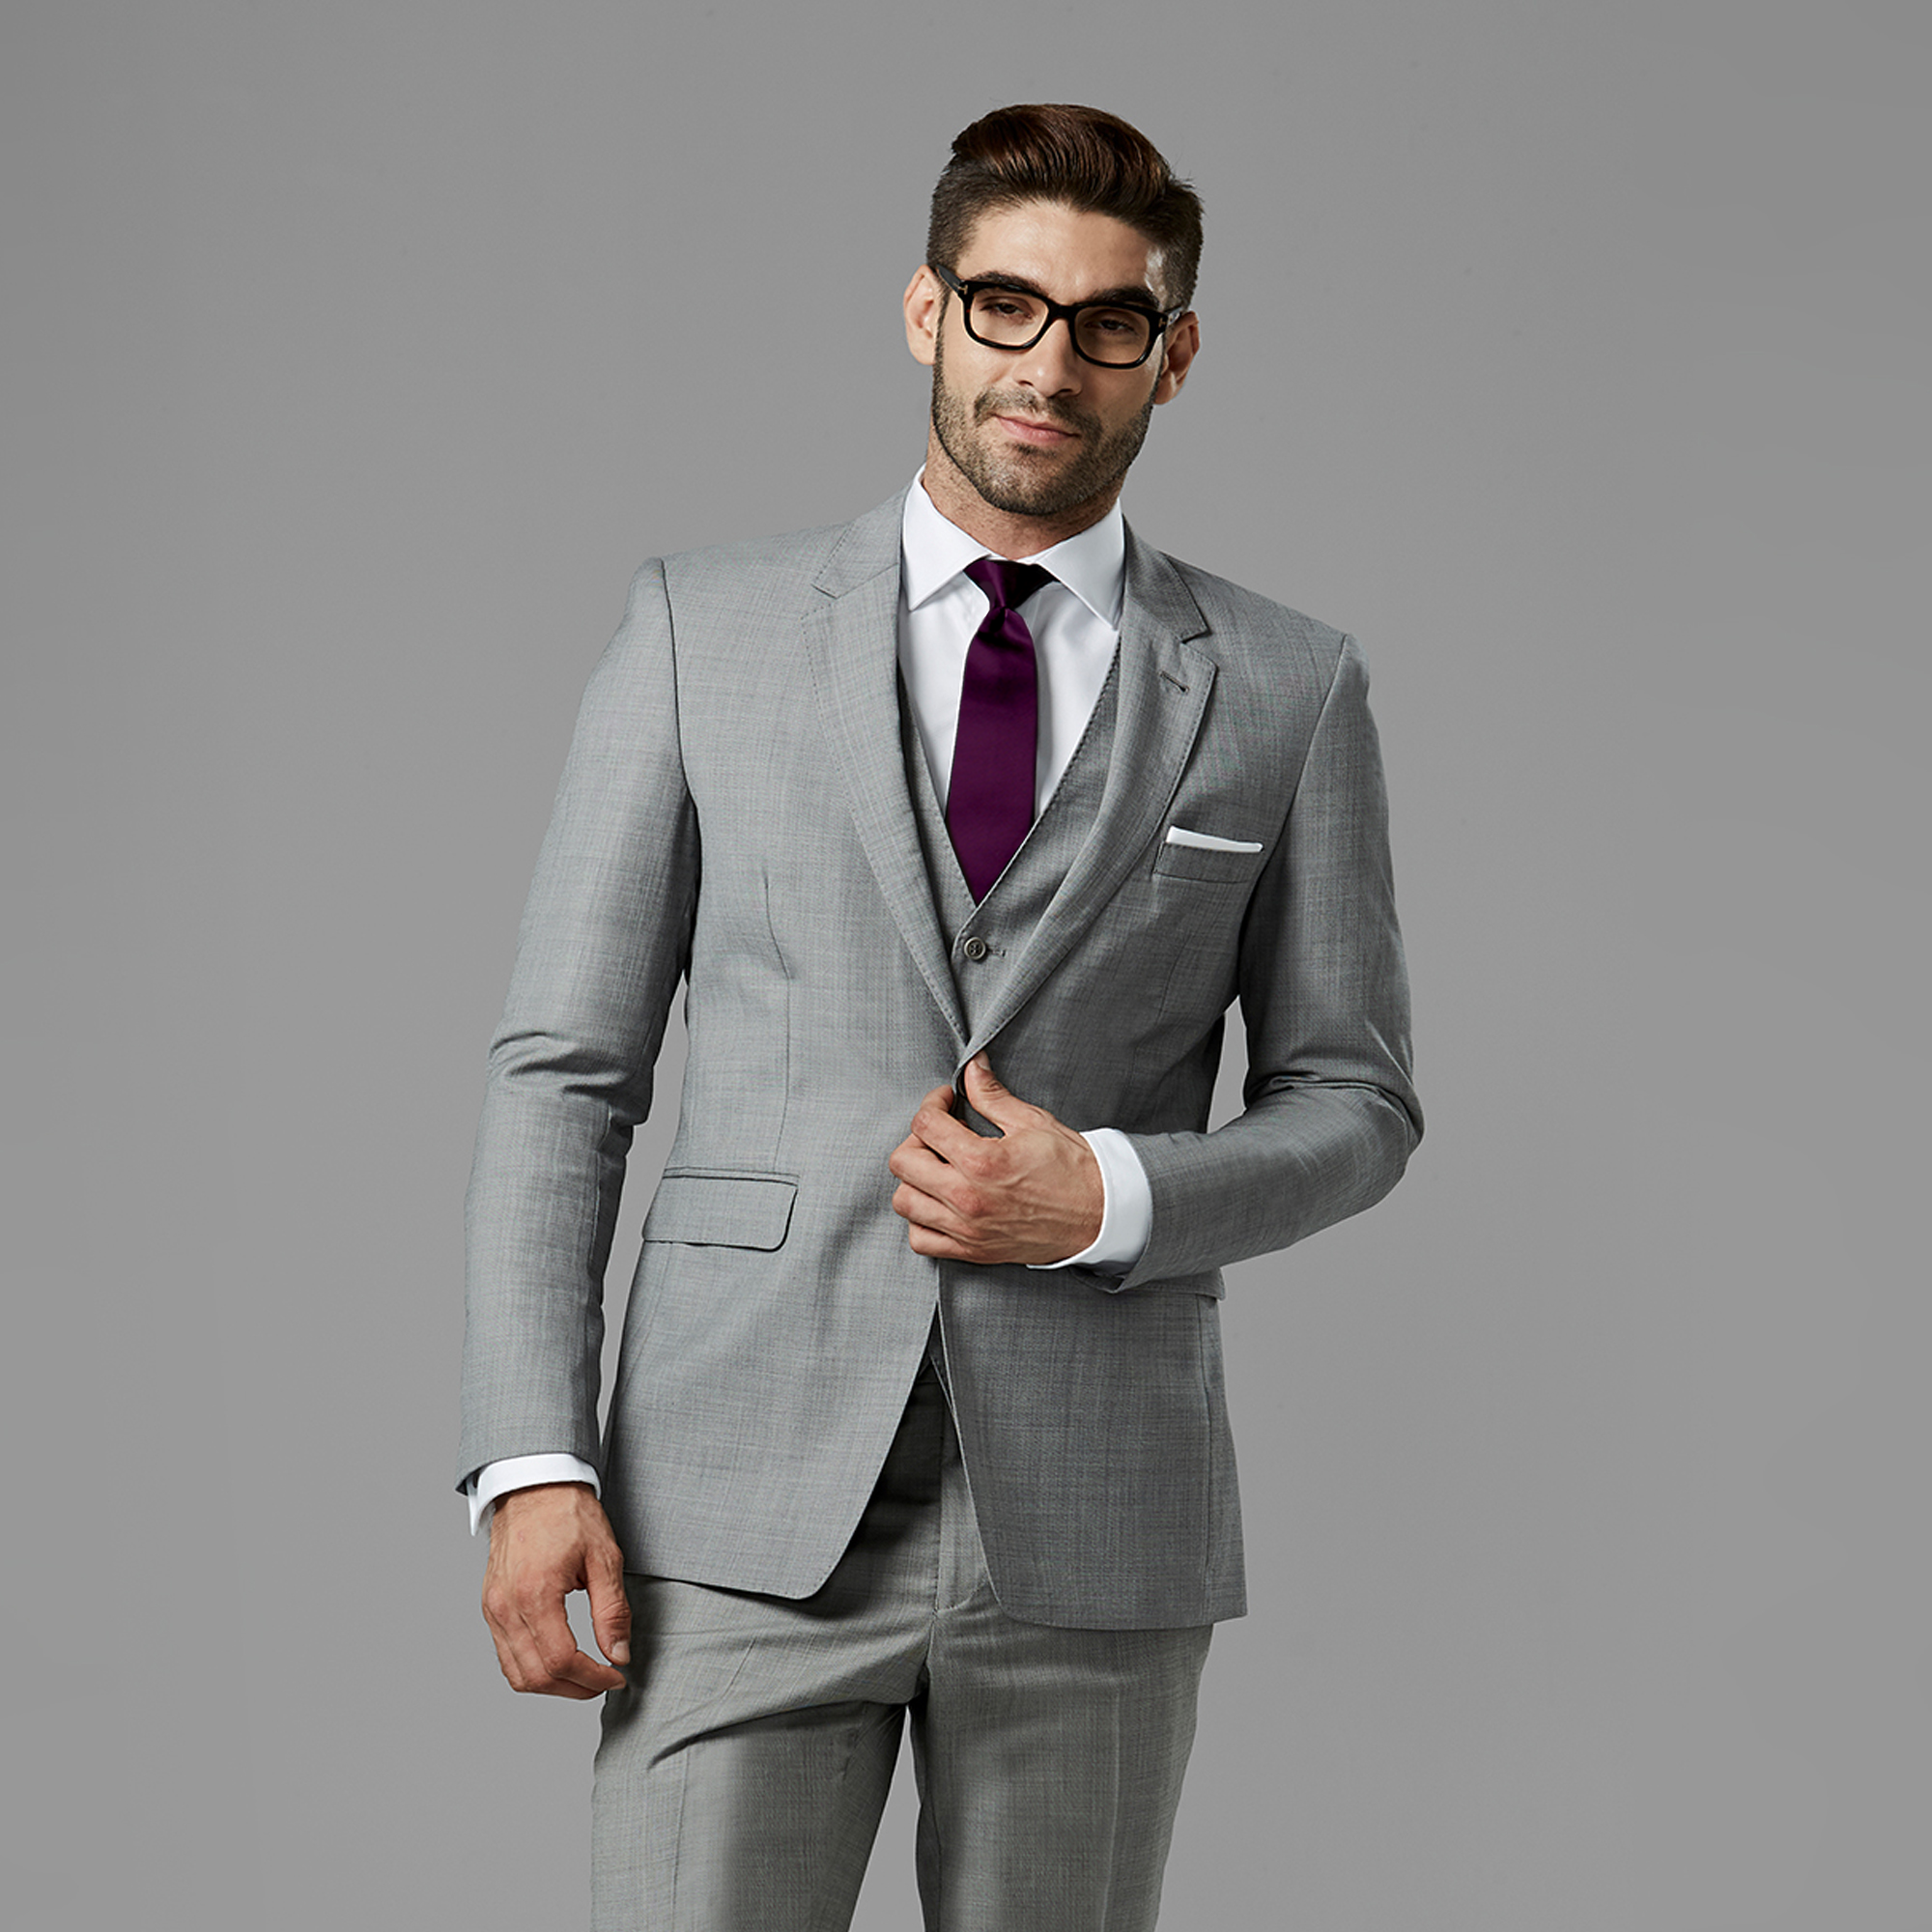 Men Suits Dark Green Wedding Suit Groom Wear Suit 2 Piece Suit Two Button  Suit Party Wear Suit for Men Dinner Suit Silm Fit Gift for Him. - Etsy